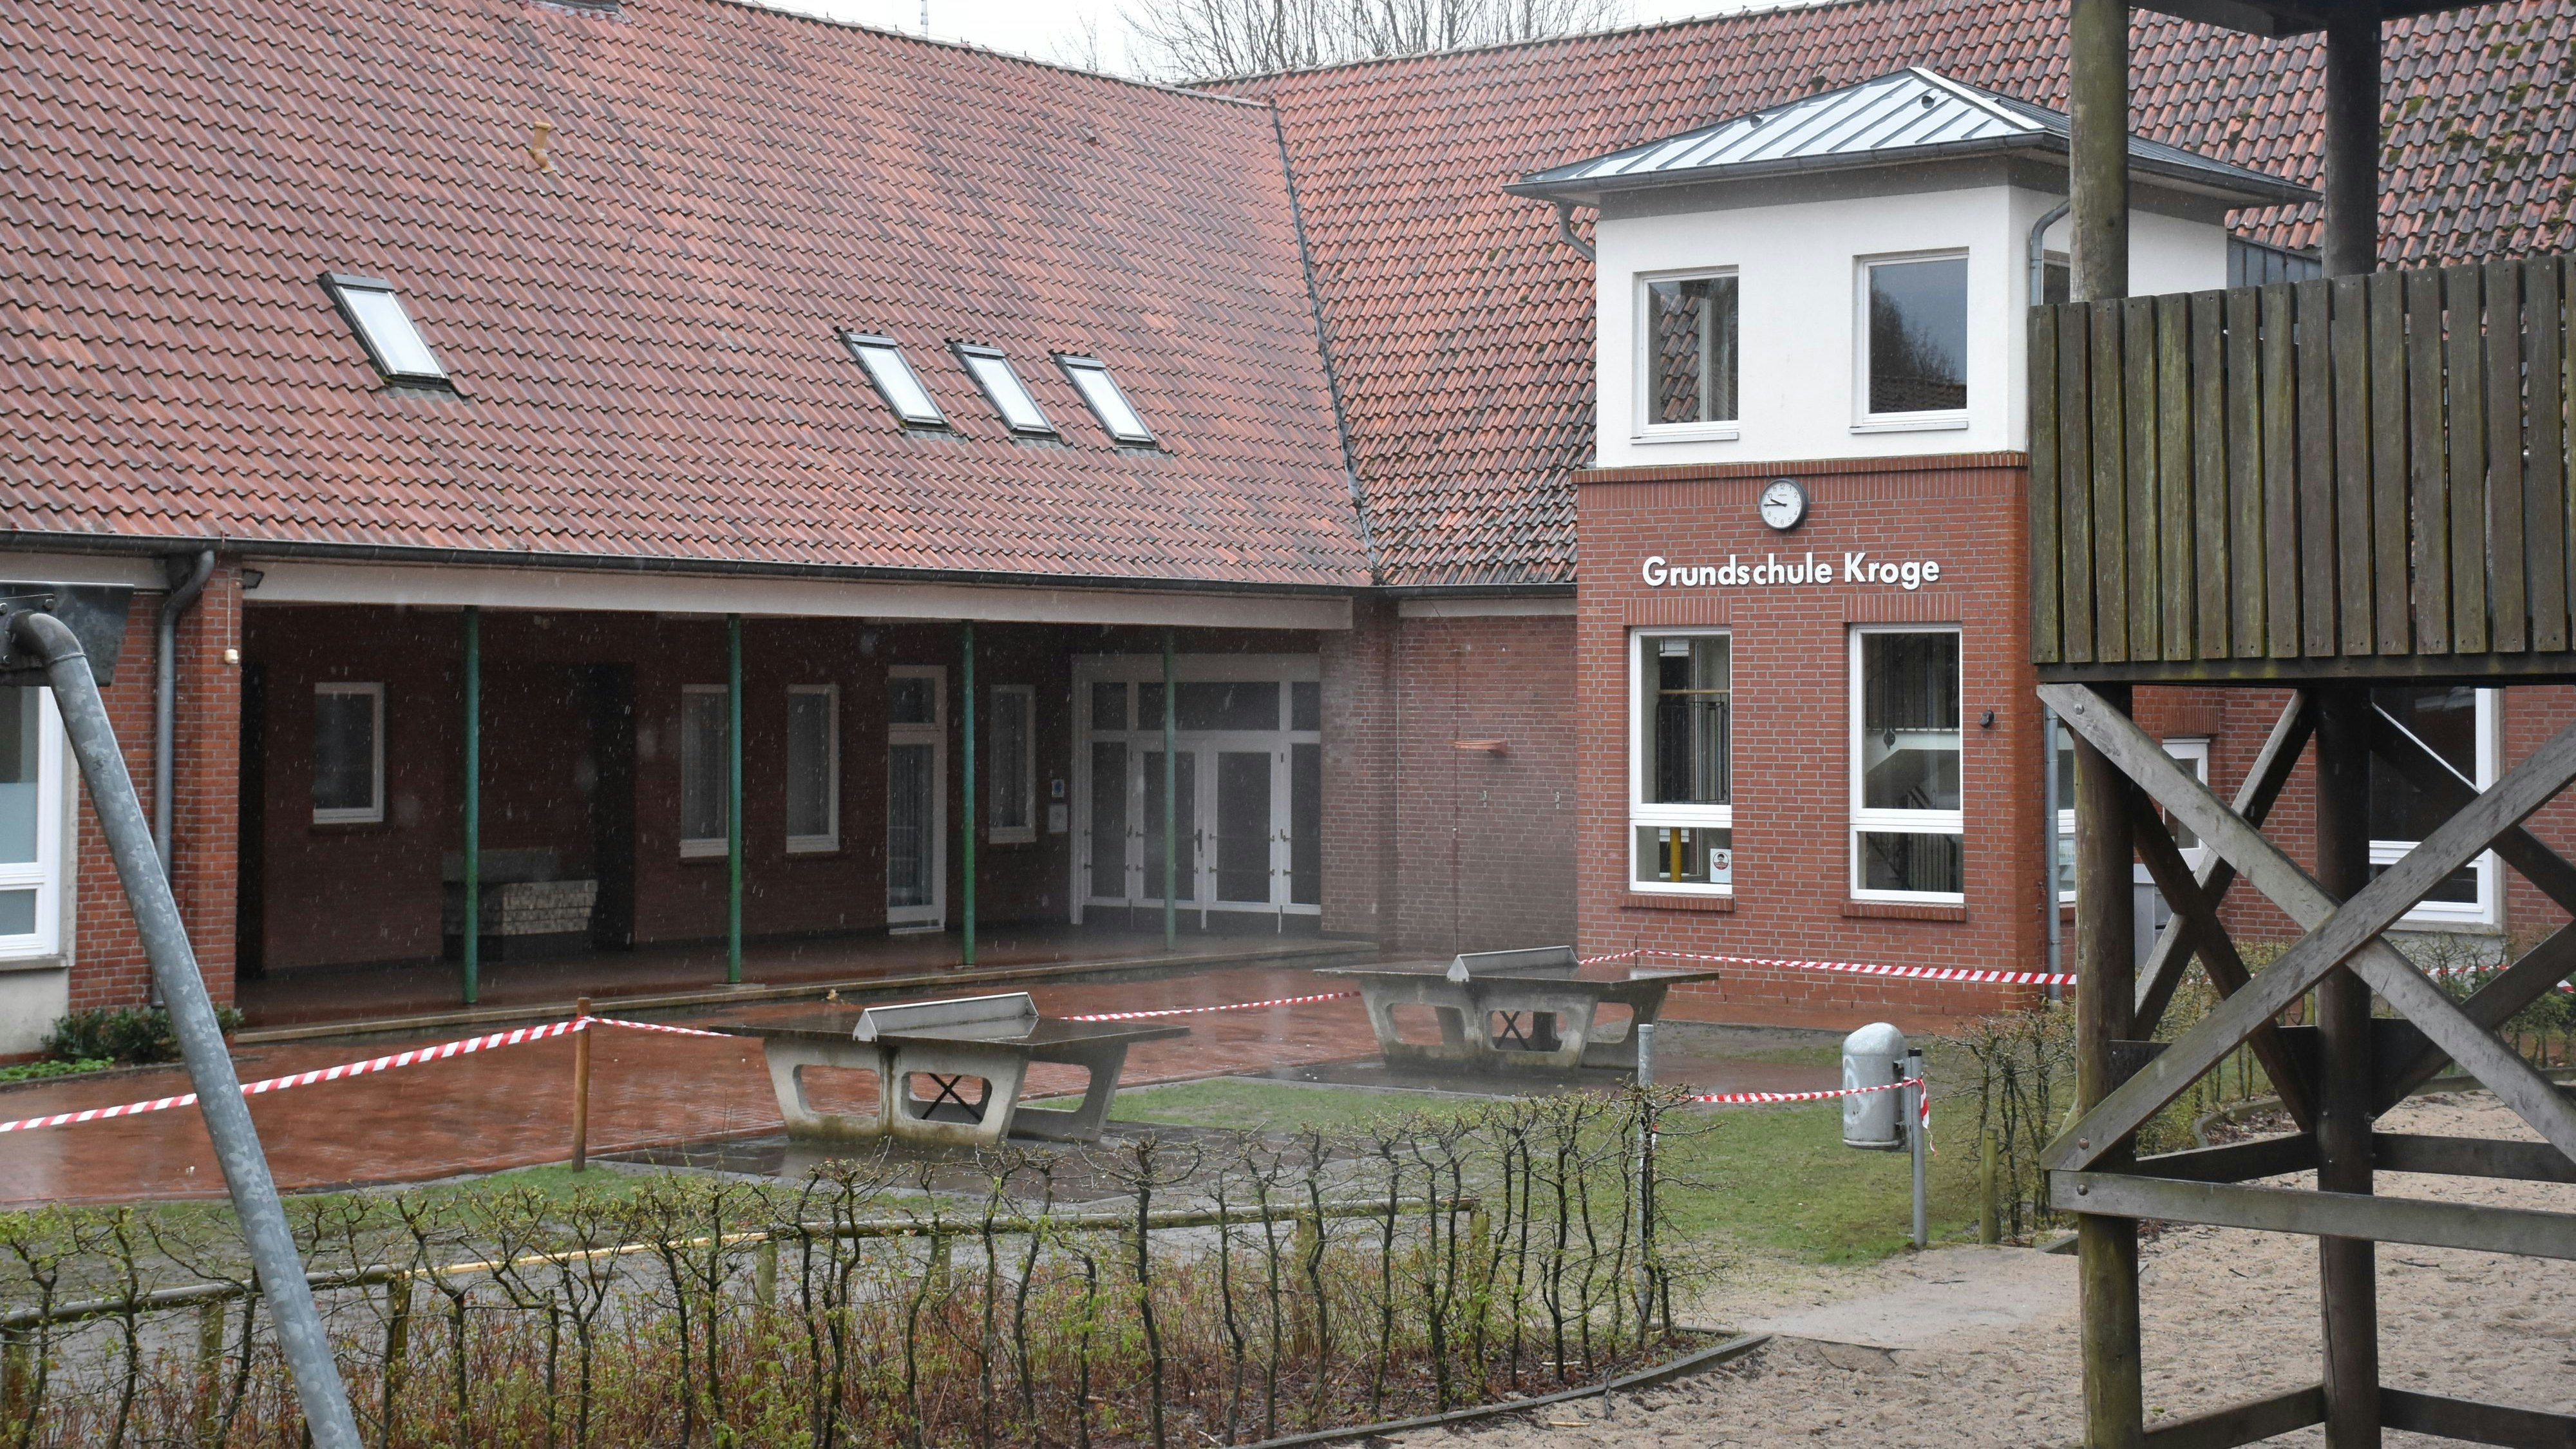 Die Grundschule Kroge verändert sich: Der offene, überdachte Bereich soll durch eine Fensterfront in eine Pausenhalle umgewandelt werden. Foto: Timphaus